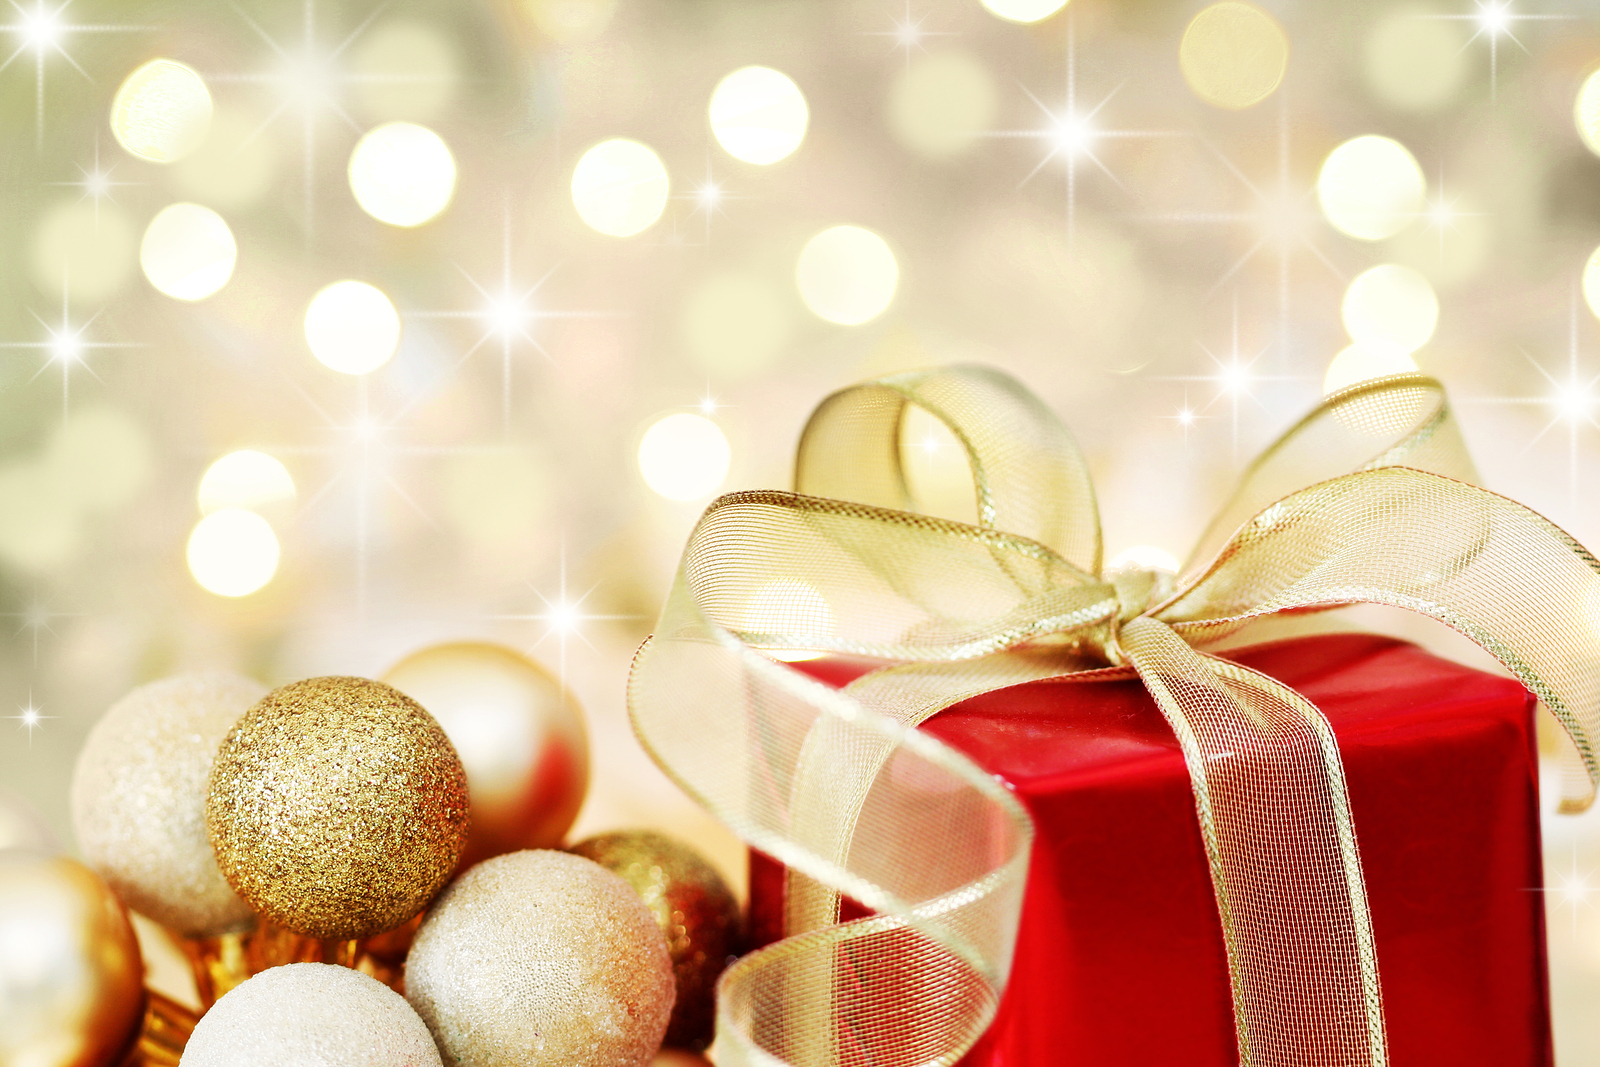 Tis the season: The secret to surviving Christmas